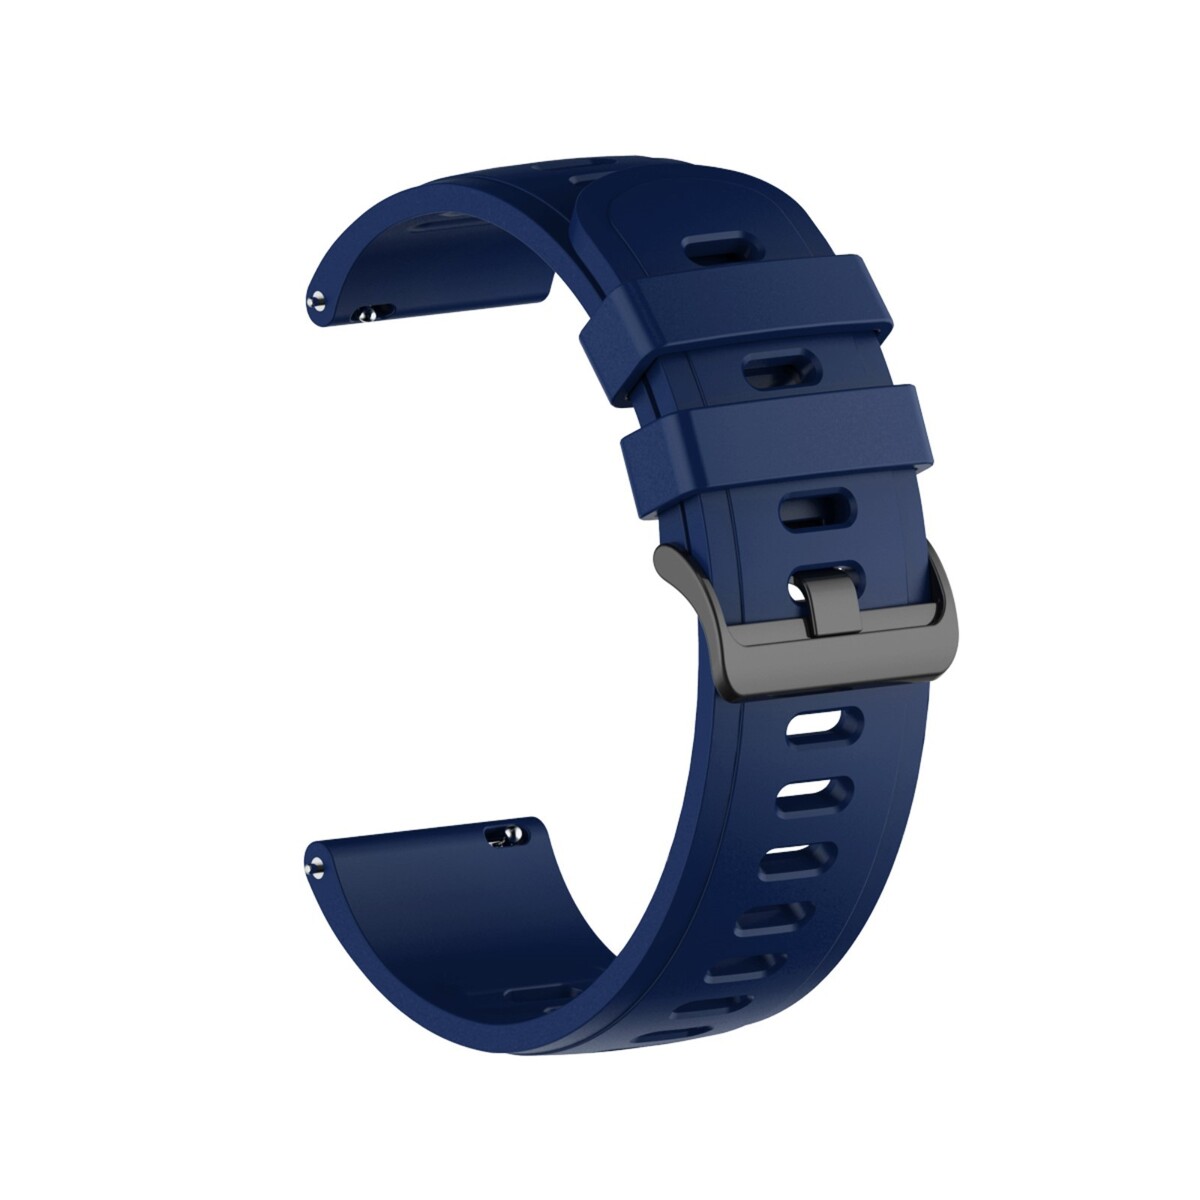 Ремешок для часов, 22 мм, силикон, темно-синий часы наручные электронные с будильником d 5 8 см ремешок l 26 см 5 atm синий ремешок